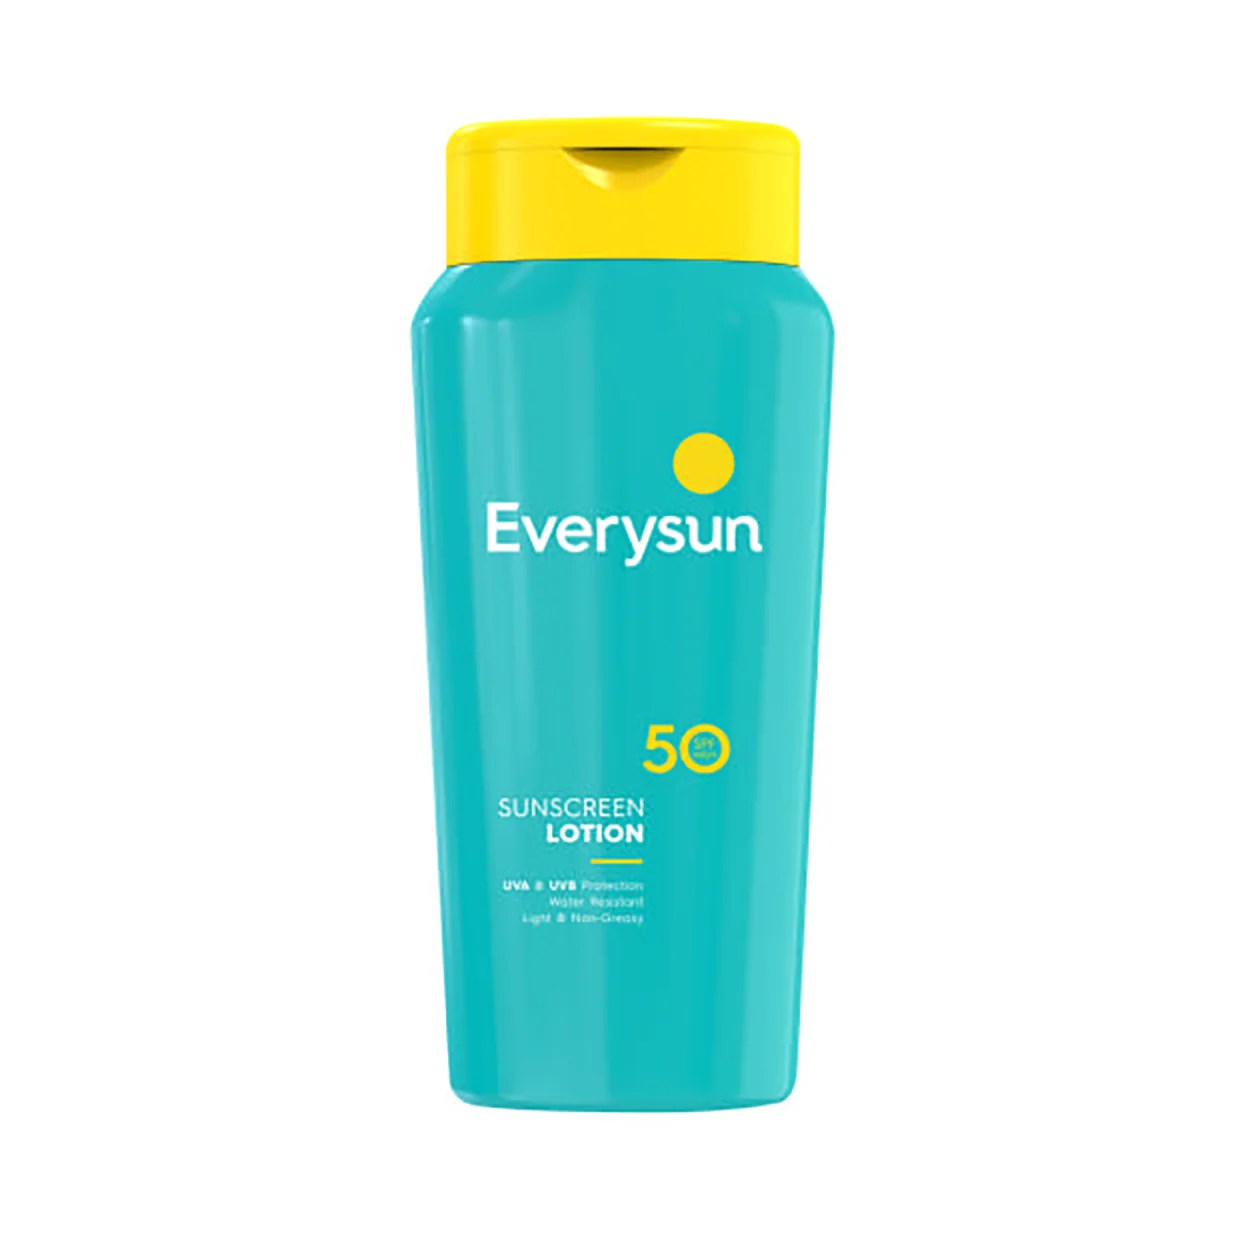 Sunscreen di Alfamart, Rekomendasi Terbaik untuk Melindungi Kulit